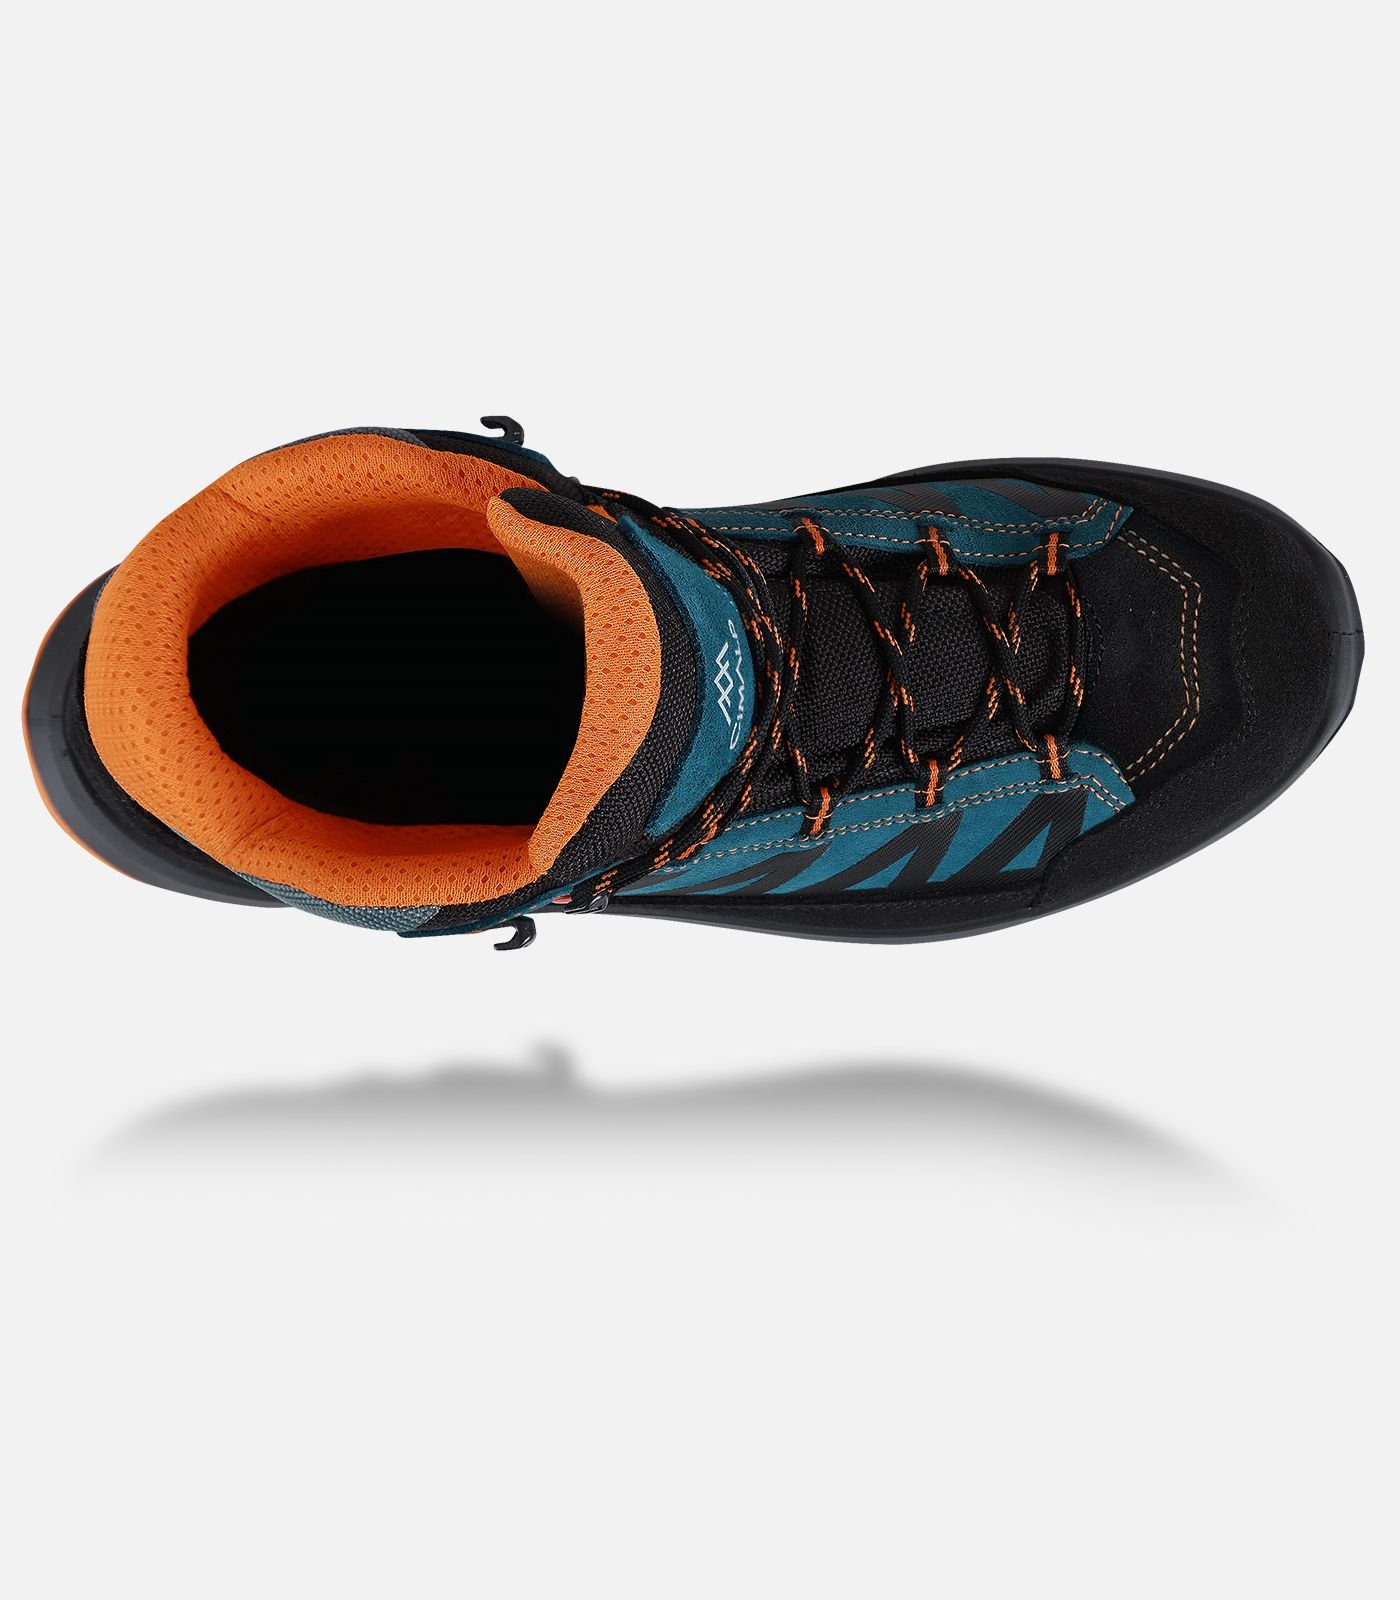 Wasserdichte Trekking-Schuhe mit Vibram®-Sohle